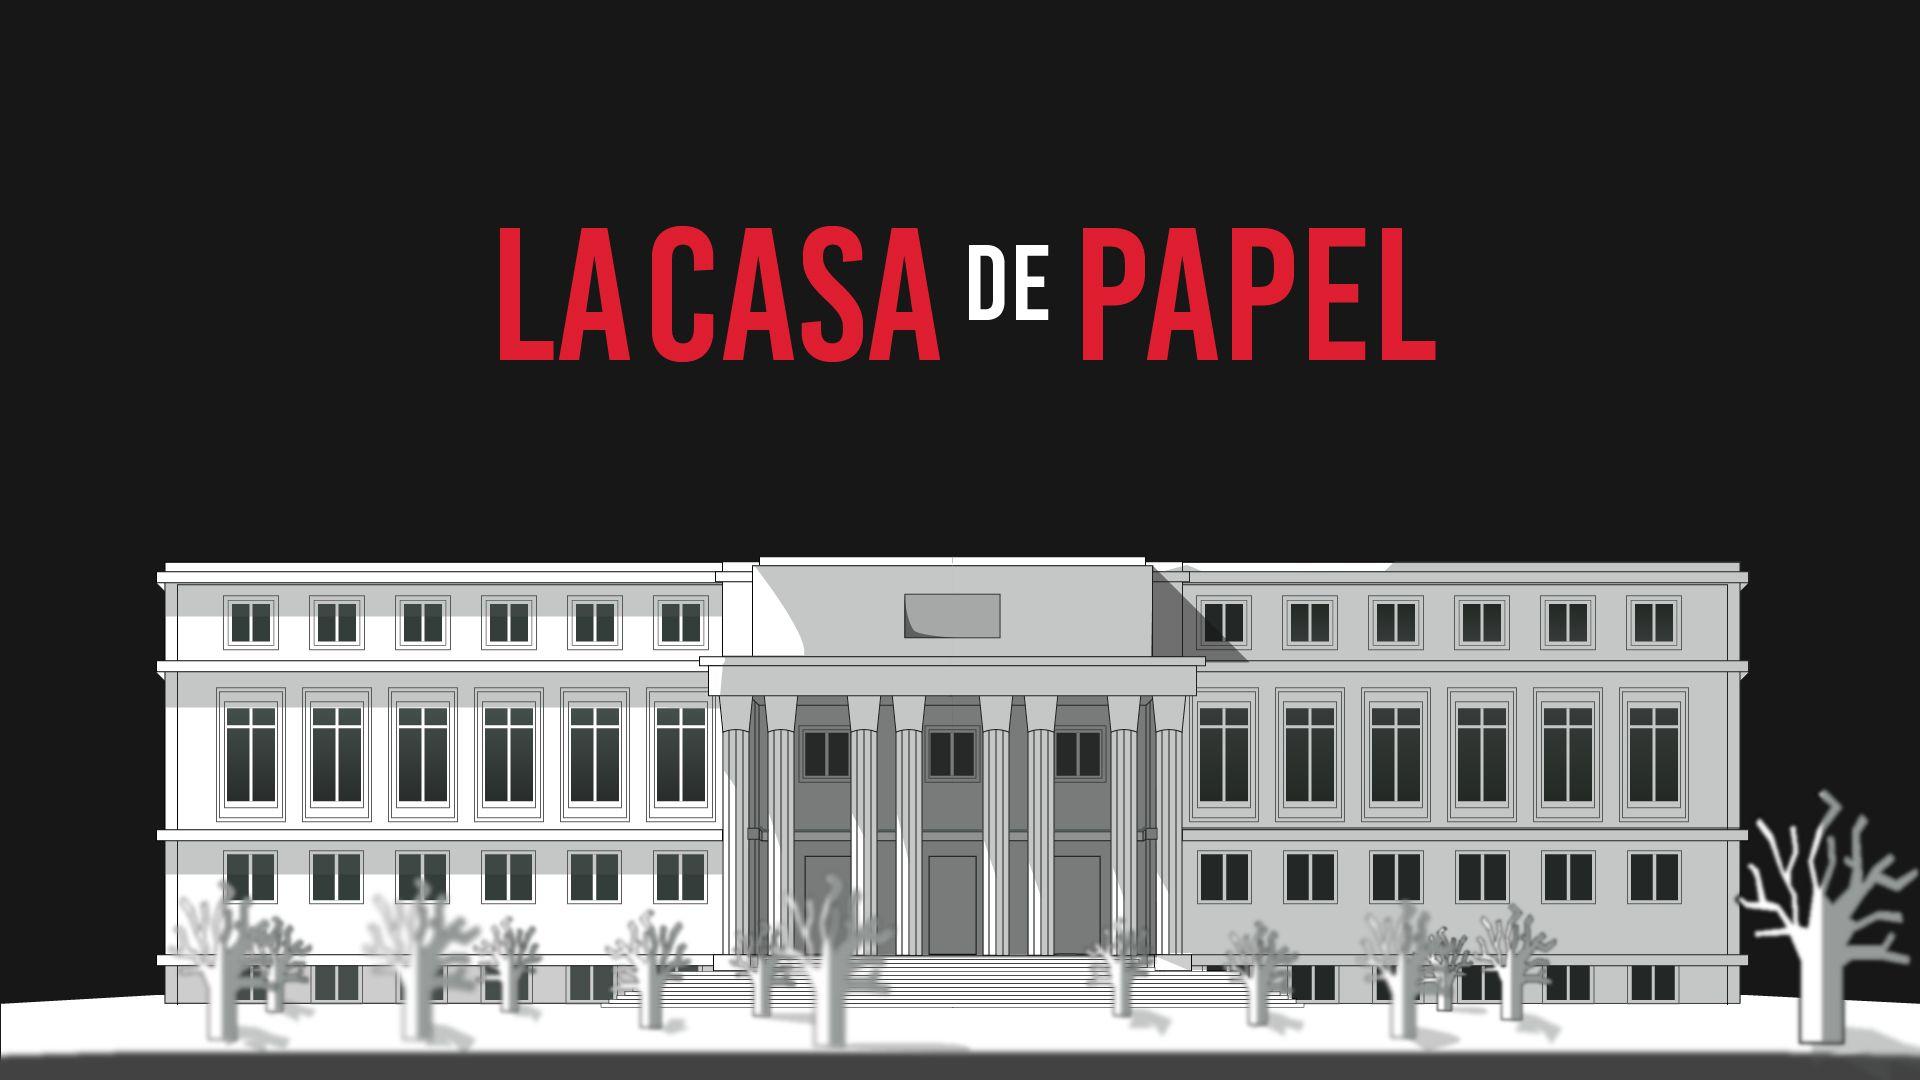 La Casa De Papel Wallpaper - La Casa De Papel Wallpaper, Hd Tv Series